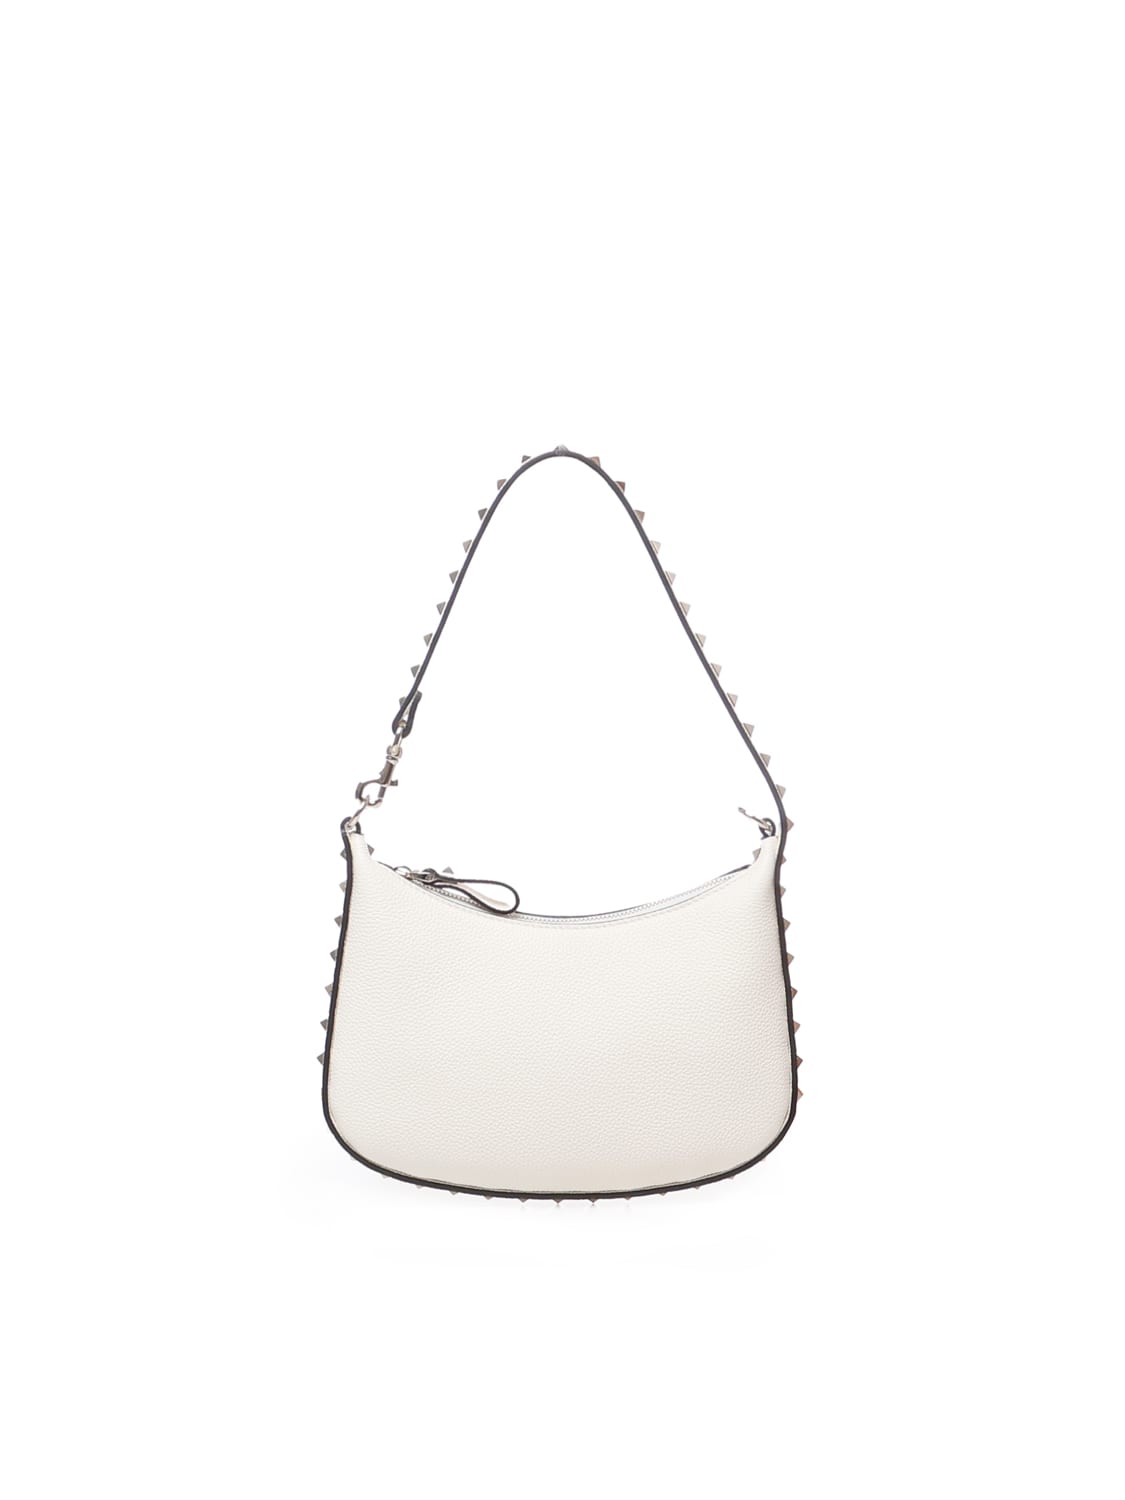 Valentino Garavani Rockstud Mini Hobo Bag In Calfskin In Cream